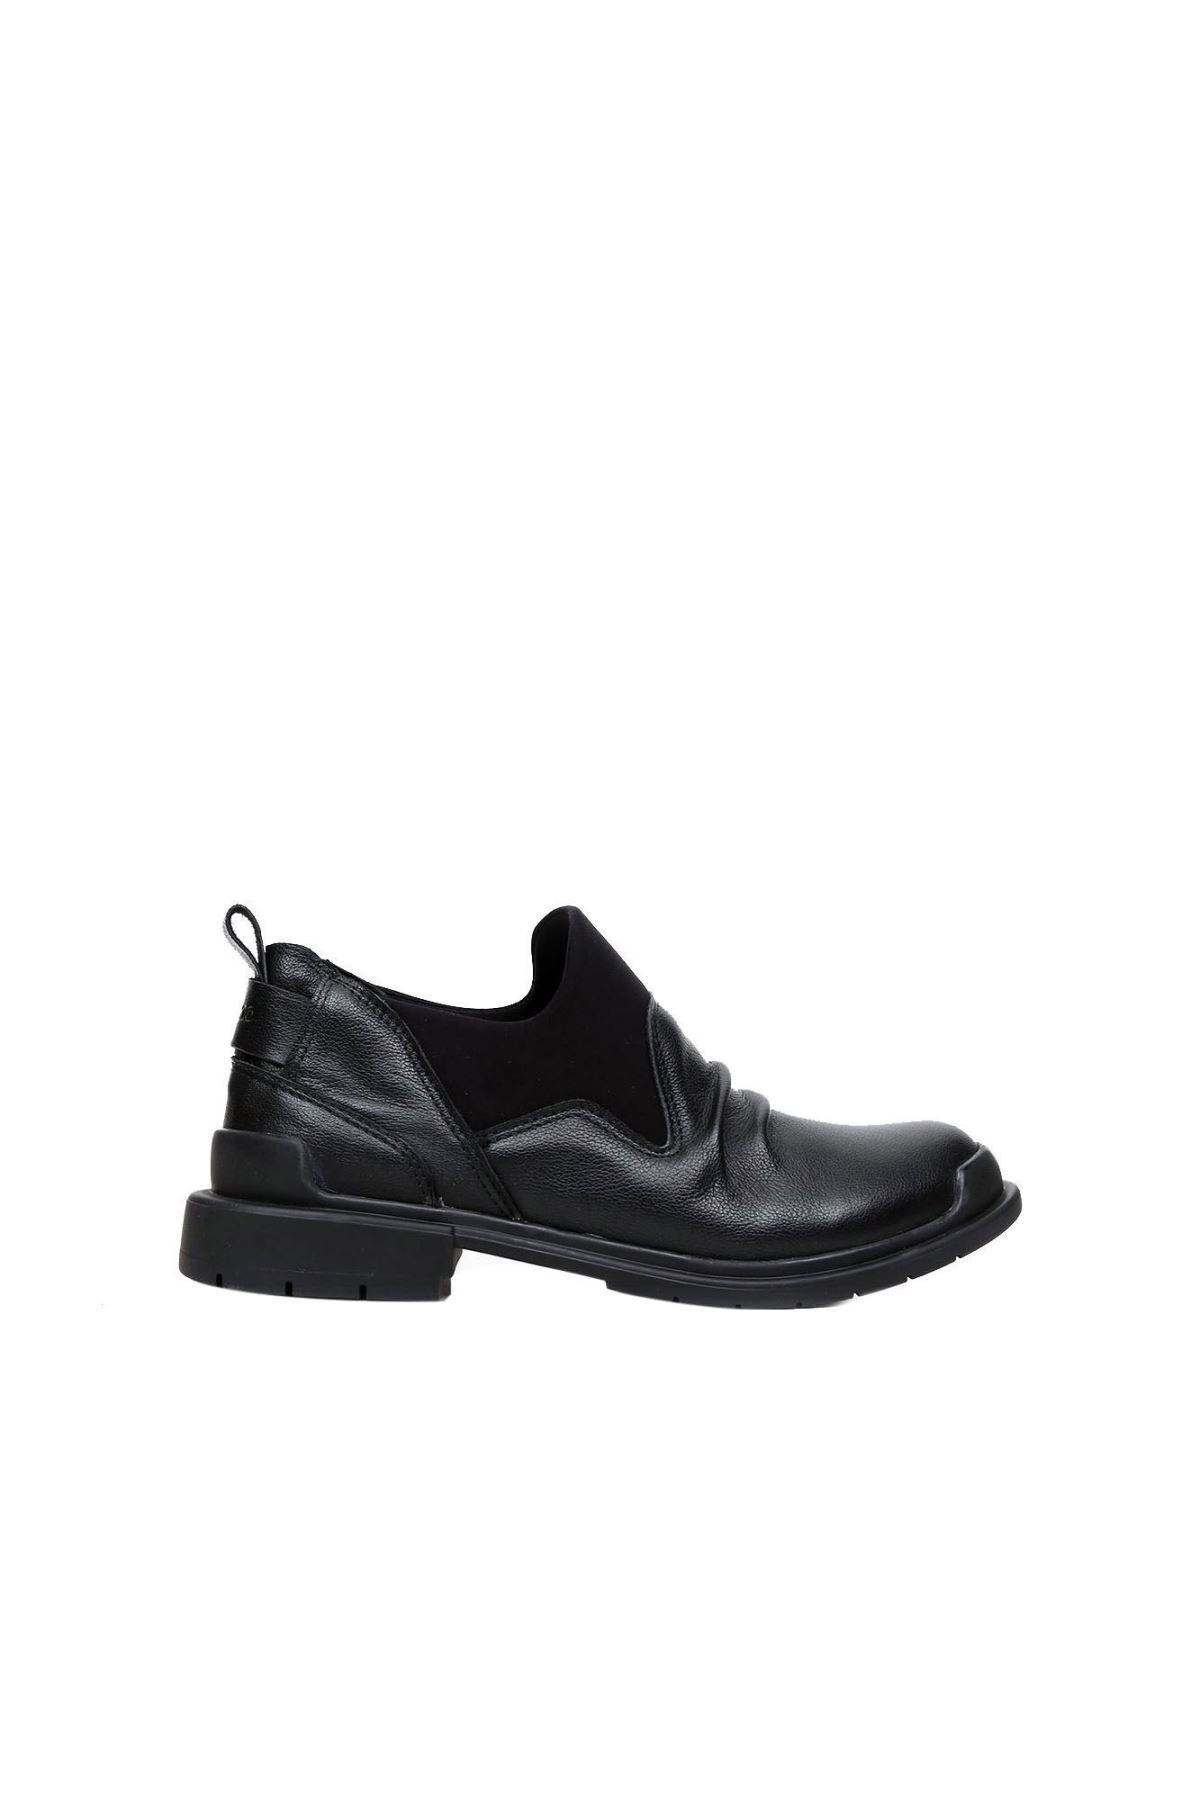 BUENO Shoes Siyah Deri Kadın Düz Ayakkabı